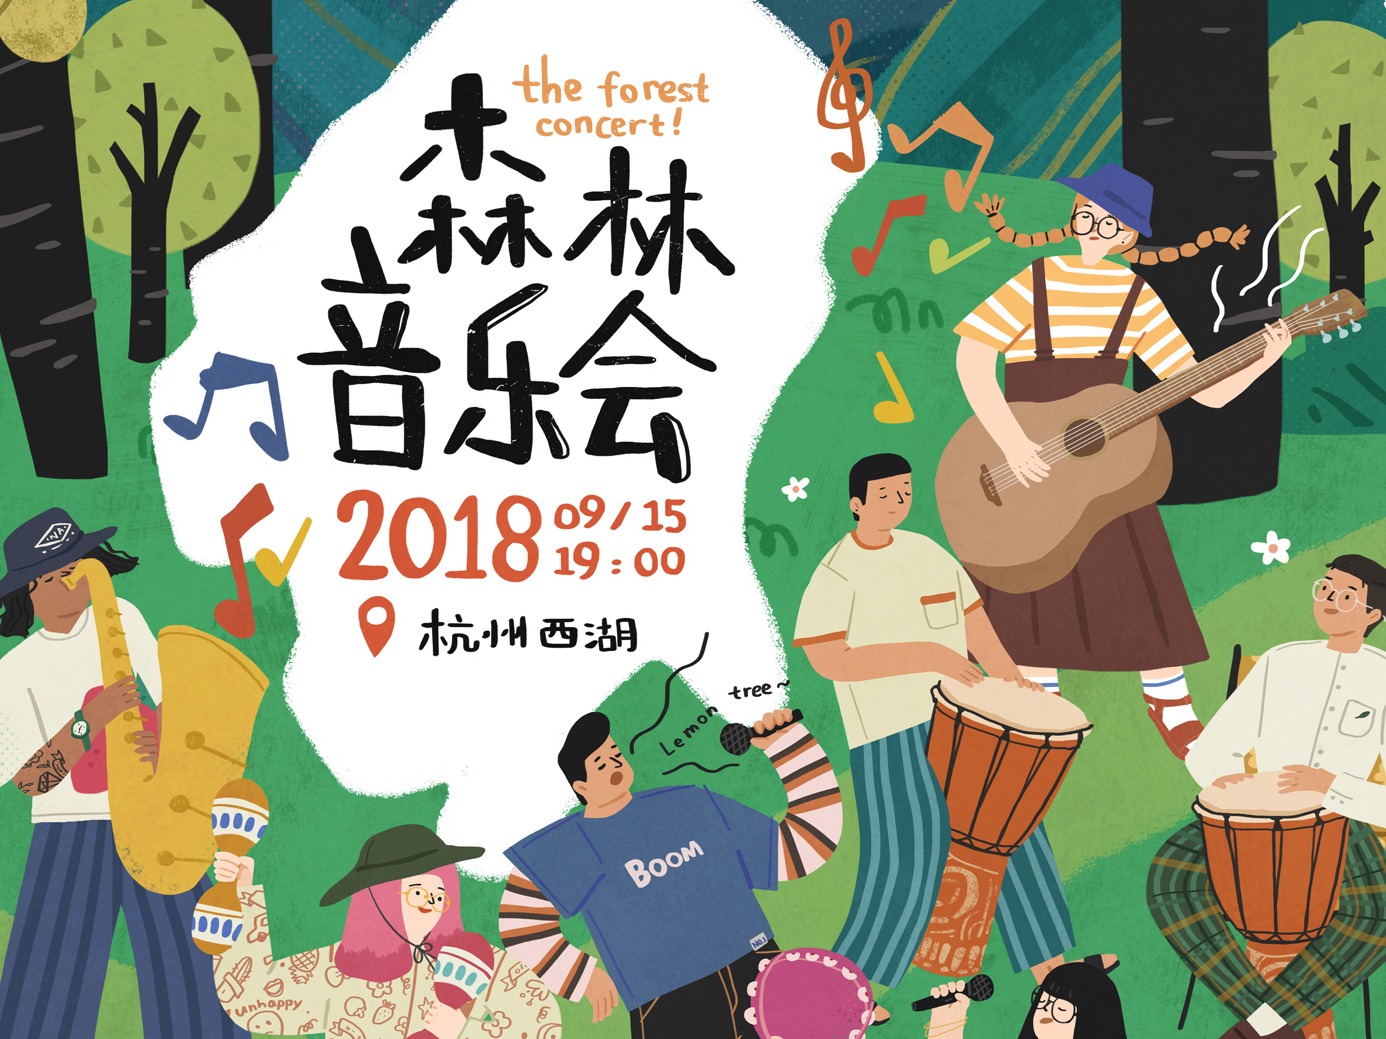 森林音乐会 the forest concert